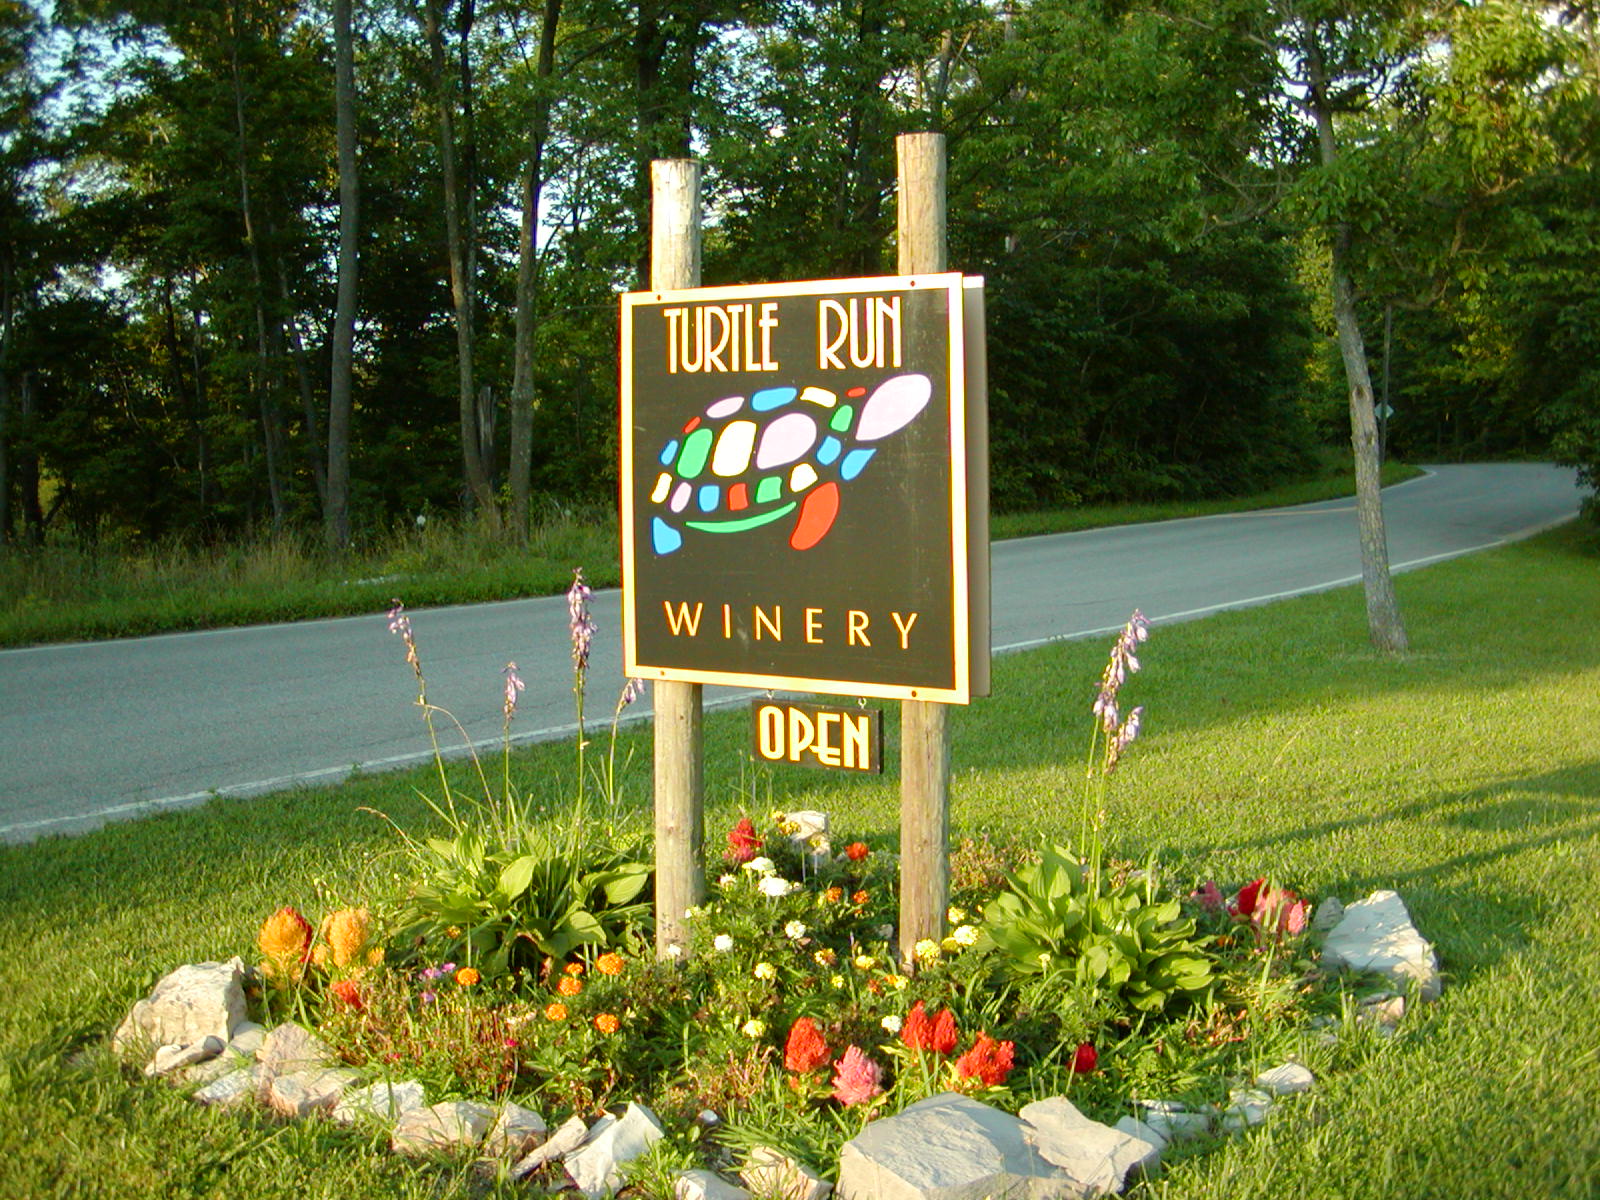 Turtle Run Winery